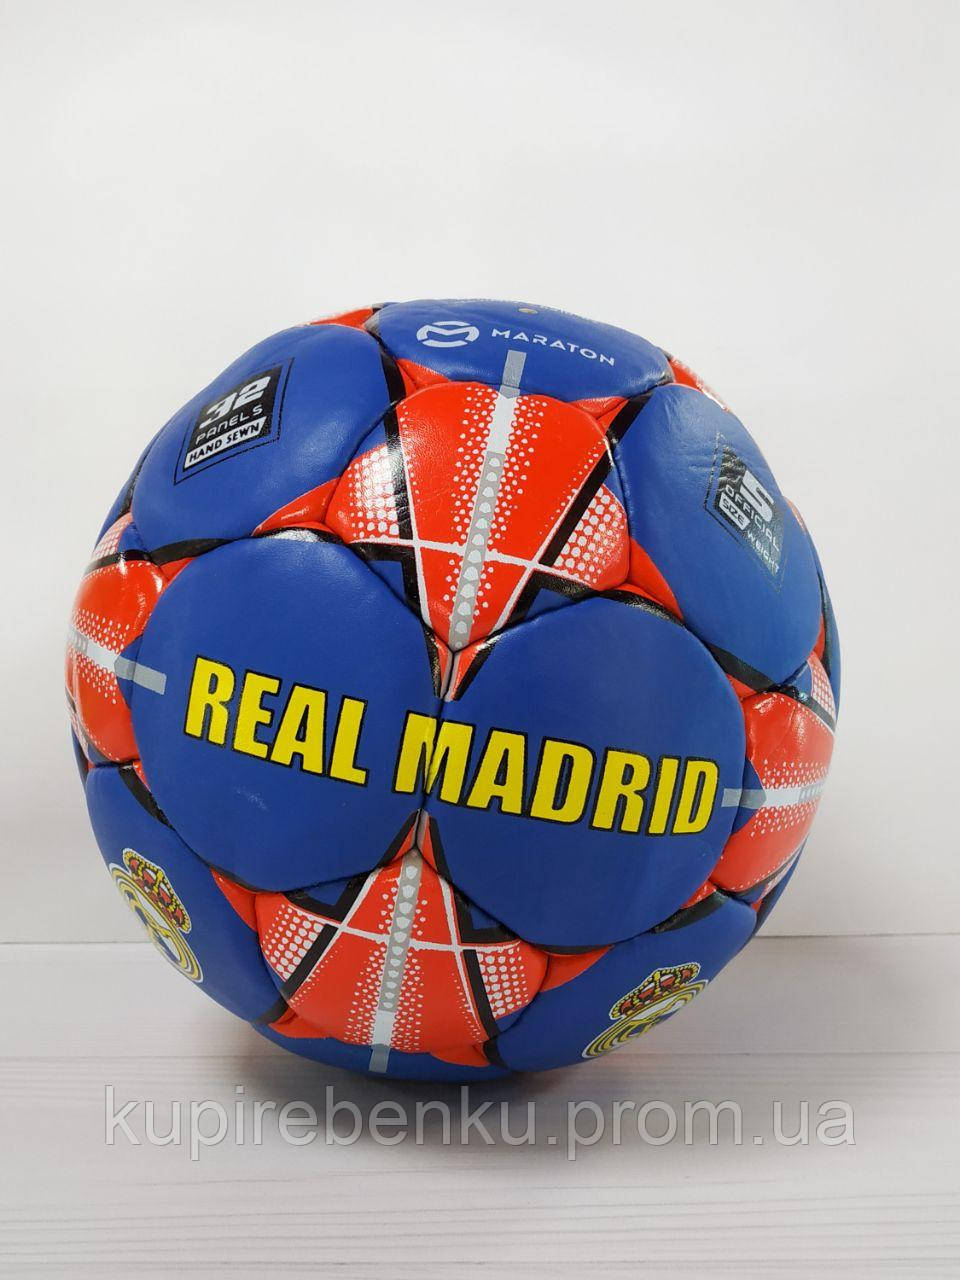 

Мяч футбольный Real Madrid Grippy кожа, сшит вручную, пятислойный Maraton MFRM-3